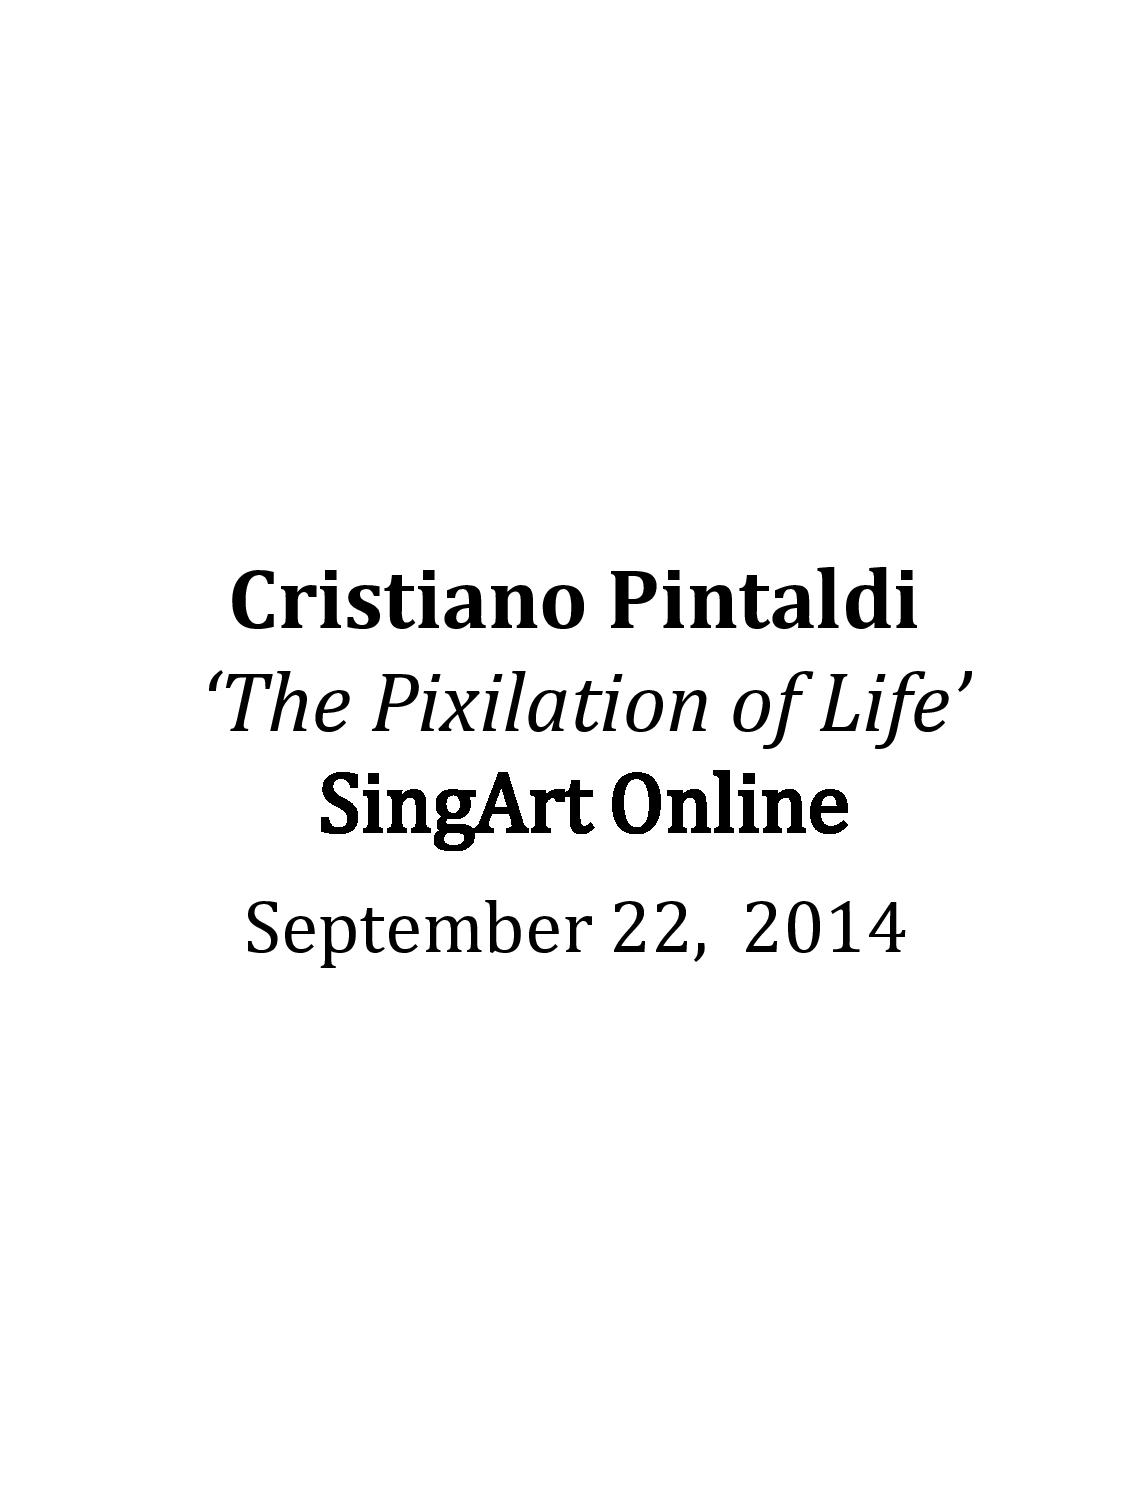 Press - Cristiano Pintaldi | Media Coverage